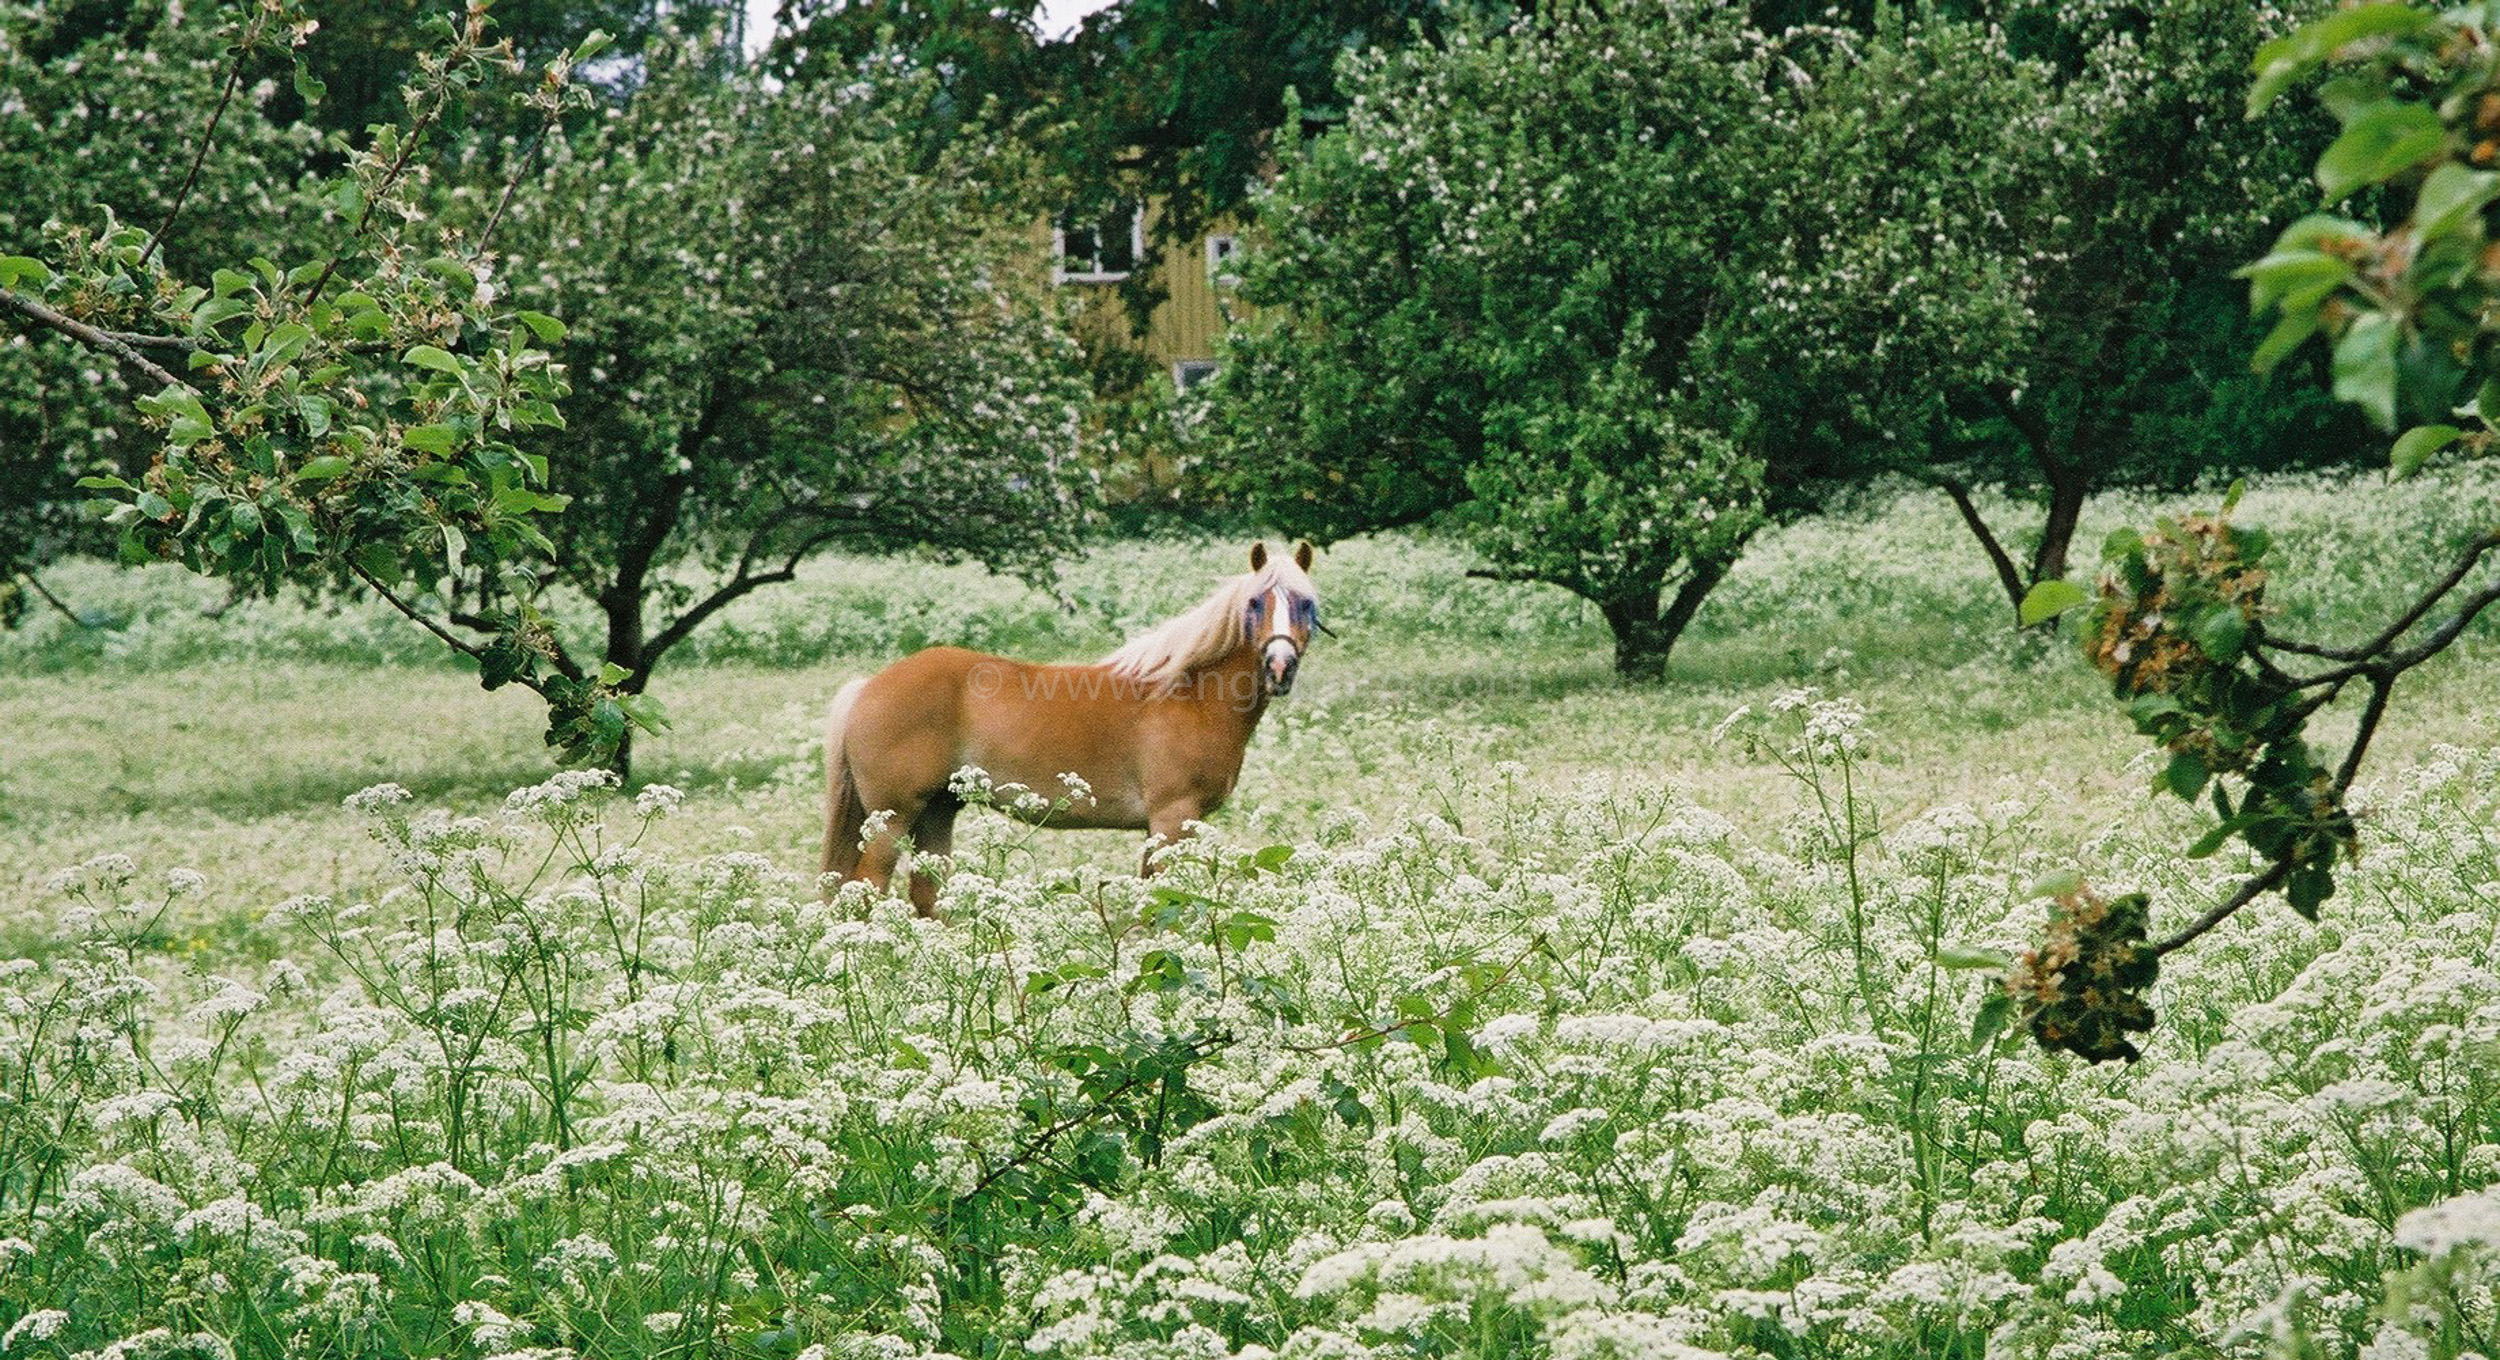 JE0203_31, Häst på bete i fruktträdgård med blomsteräng framför, Jonas Engström